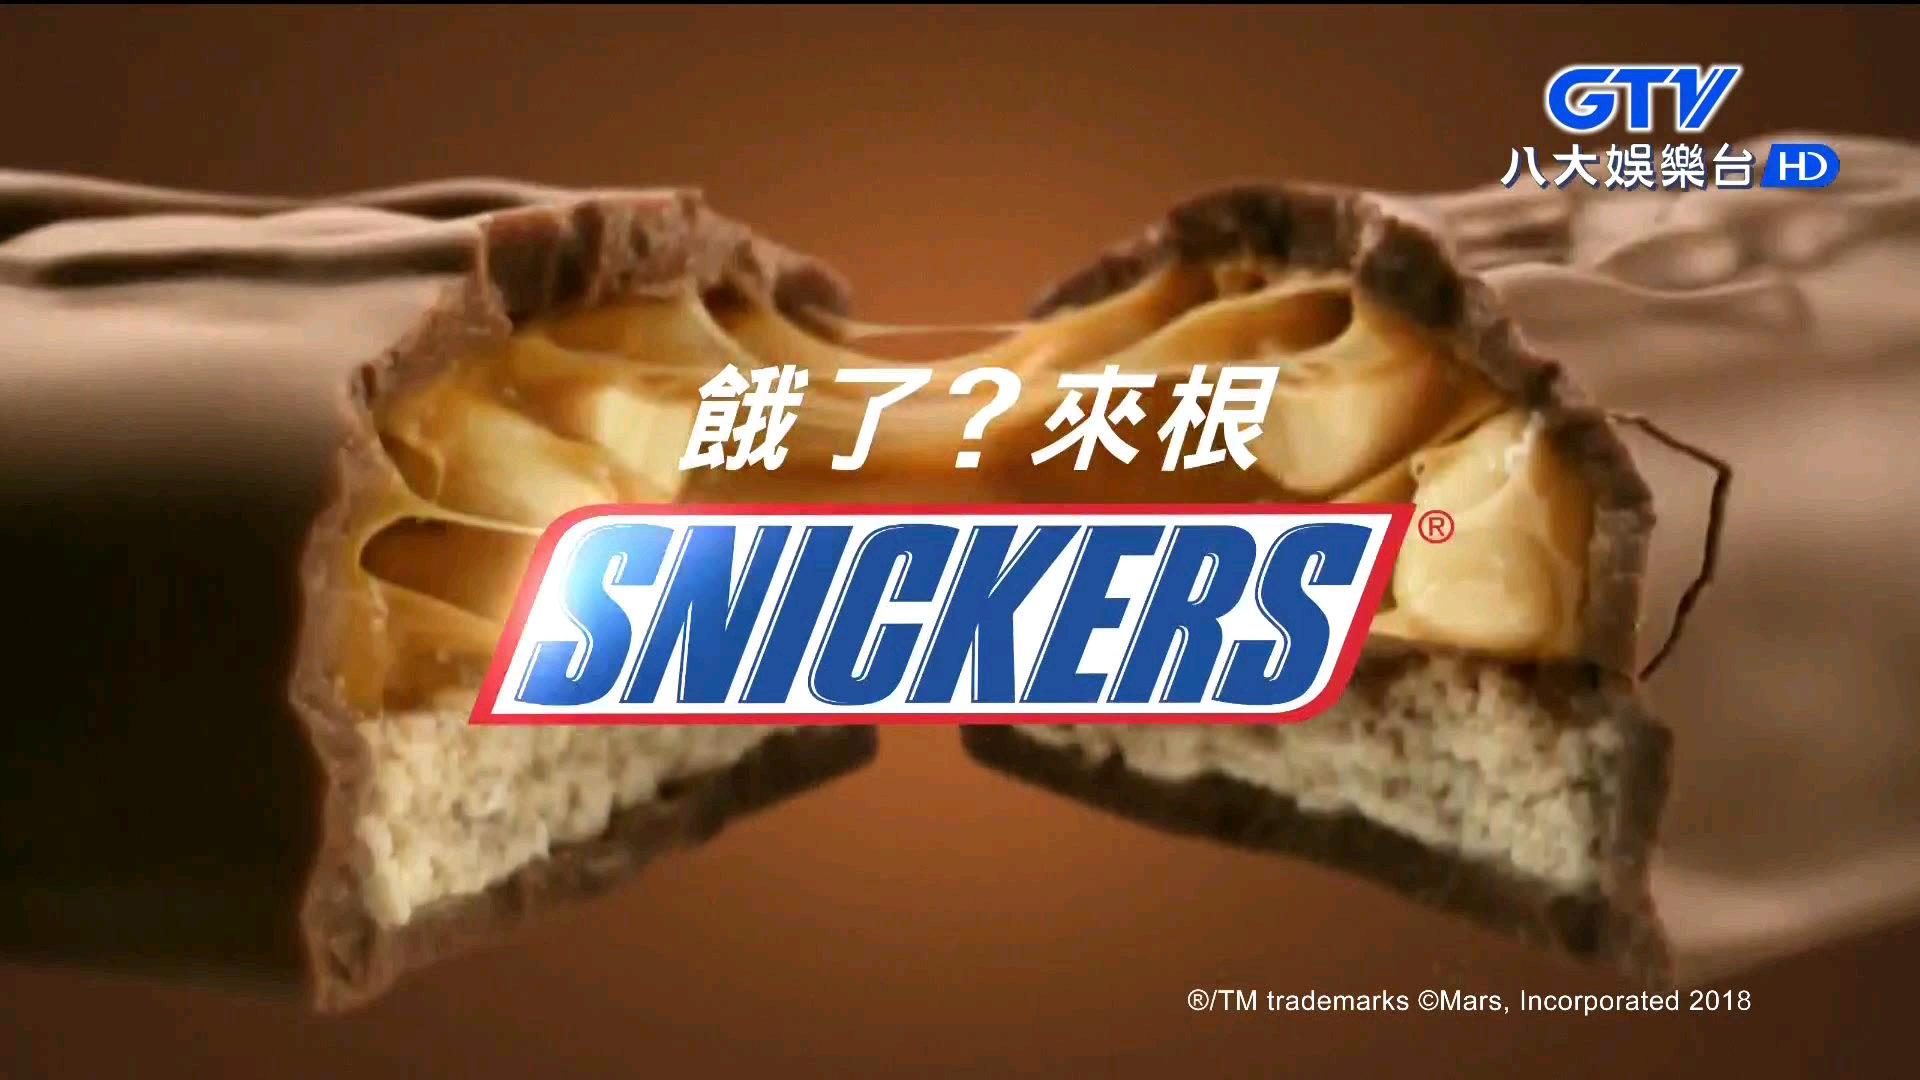 [中国/台湾地区(汉化)广告]饿了?士力架!丧尸版士力架广告